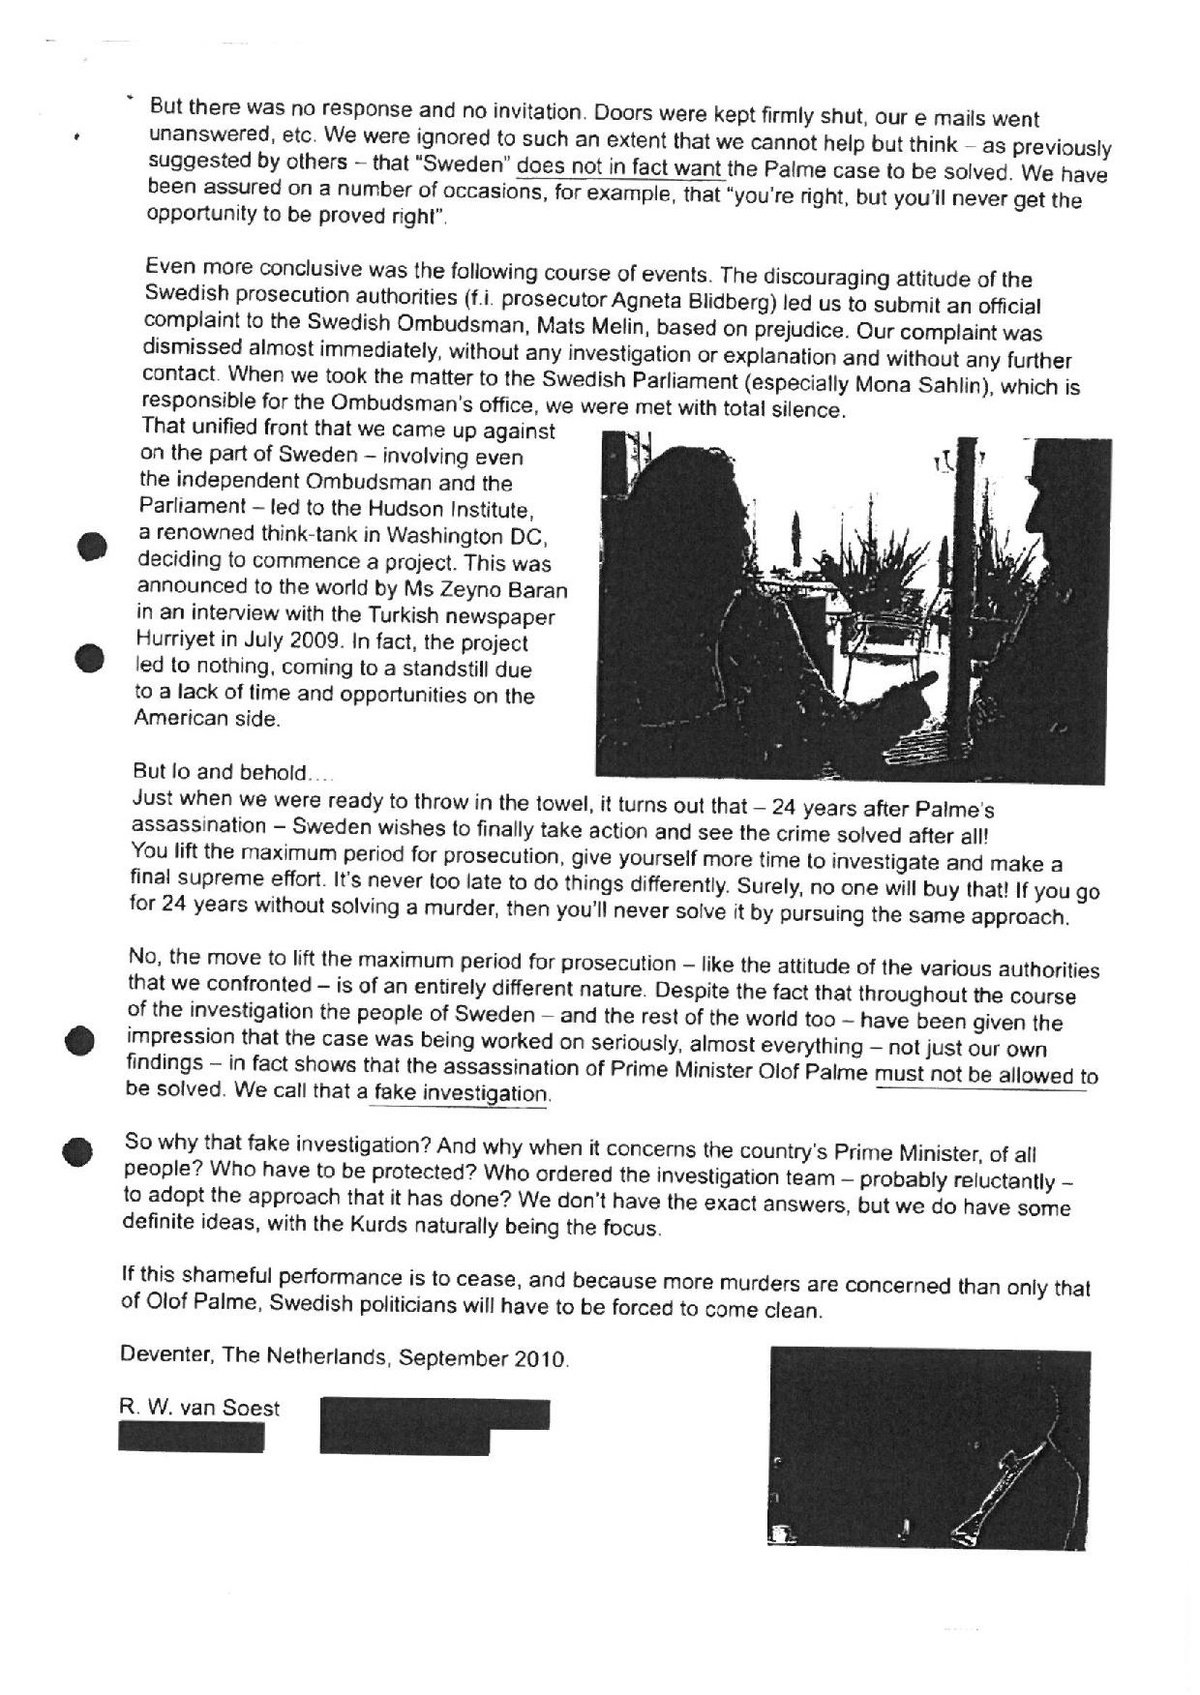 Pol-2012-05-31 Y13604-10-E Uppslag Mahmut Bilgili - Kontakter med Dolf von Soest.pdf